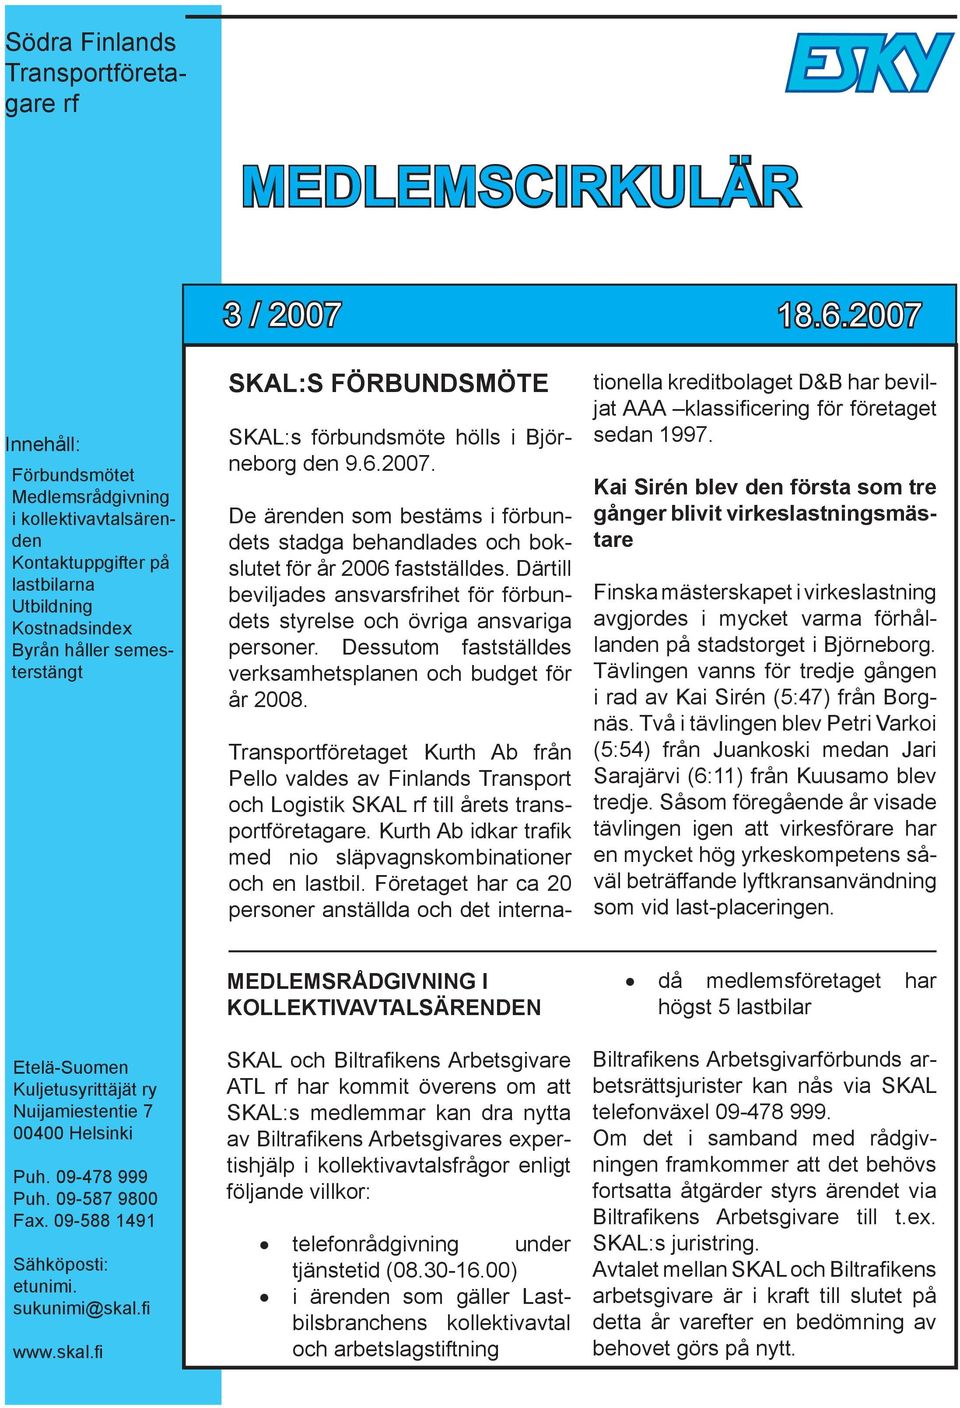 SKAL:s förbundsmöte hölls i Björneborg den 9.6.2007. De ärenden som bestäms i förbundets stadga behandlades och bokslutet för år 2006 fastställdes.